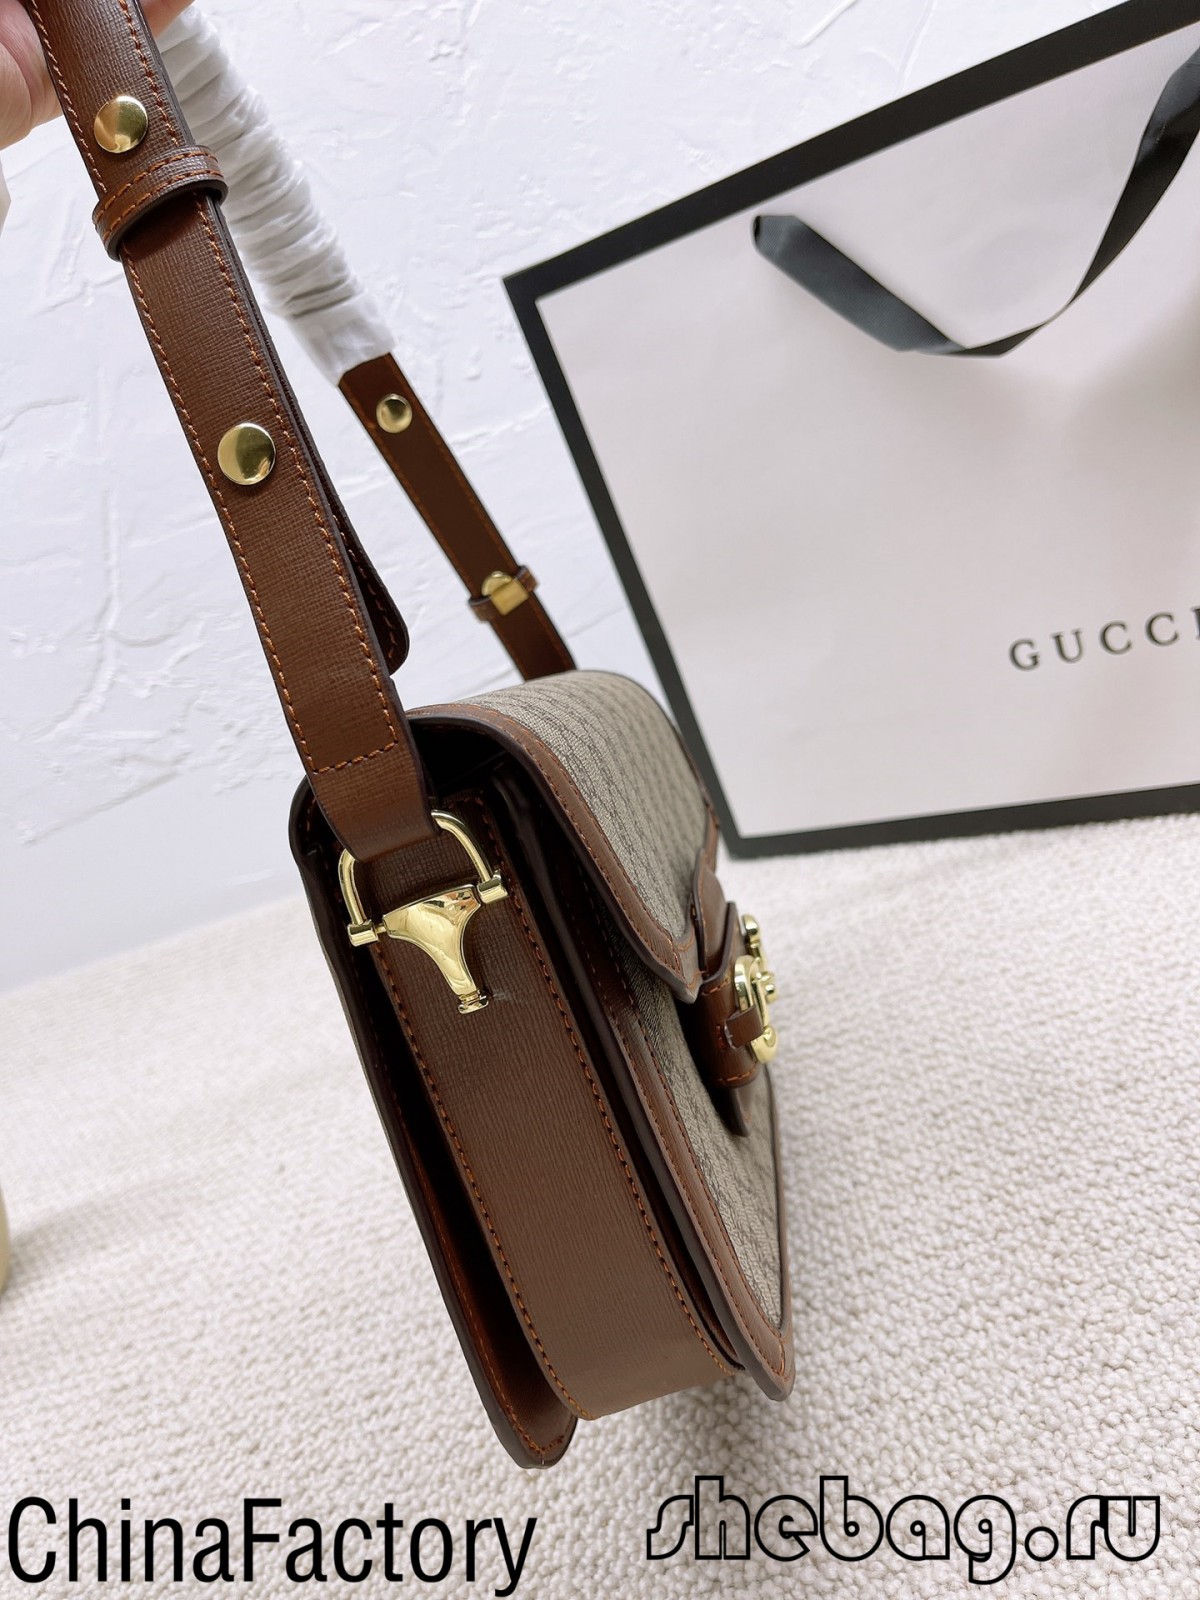 Mua sắm Túi Gucci Horse bit hobo bản sao: Gucci 1955 (Nóng nhất 2022) - Chất lượng tốt nhất Túi Louis Vuitton giả trên Cửa hàng trực tuyến, Túi thiết kế bản sao ru